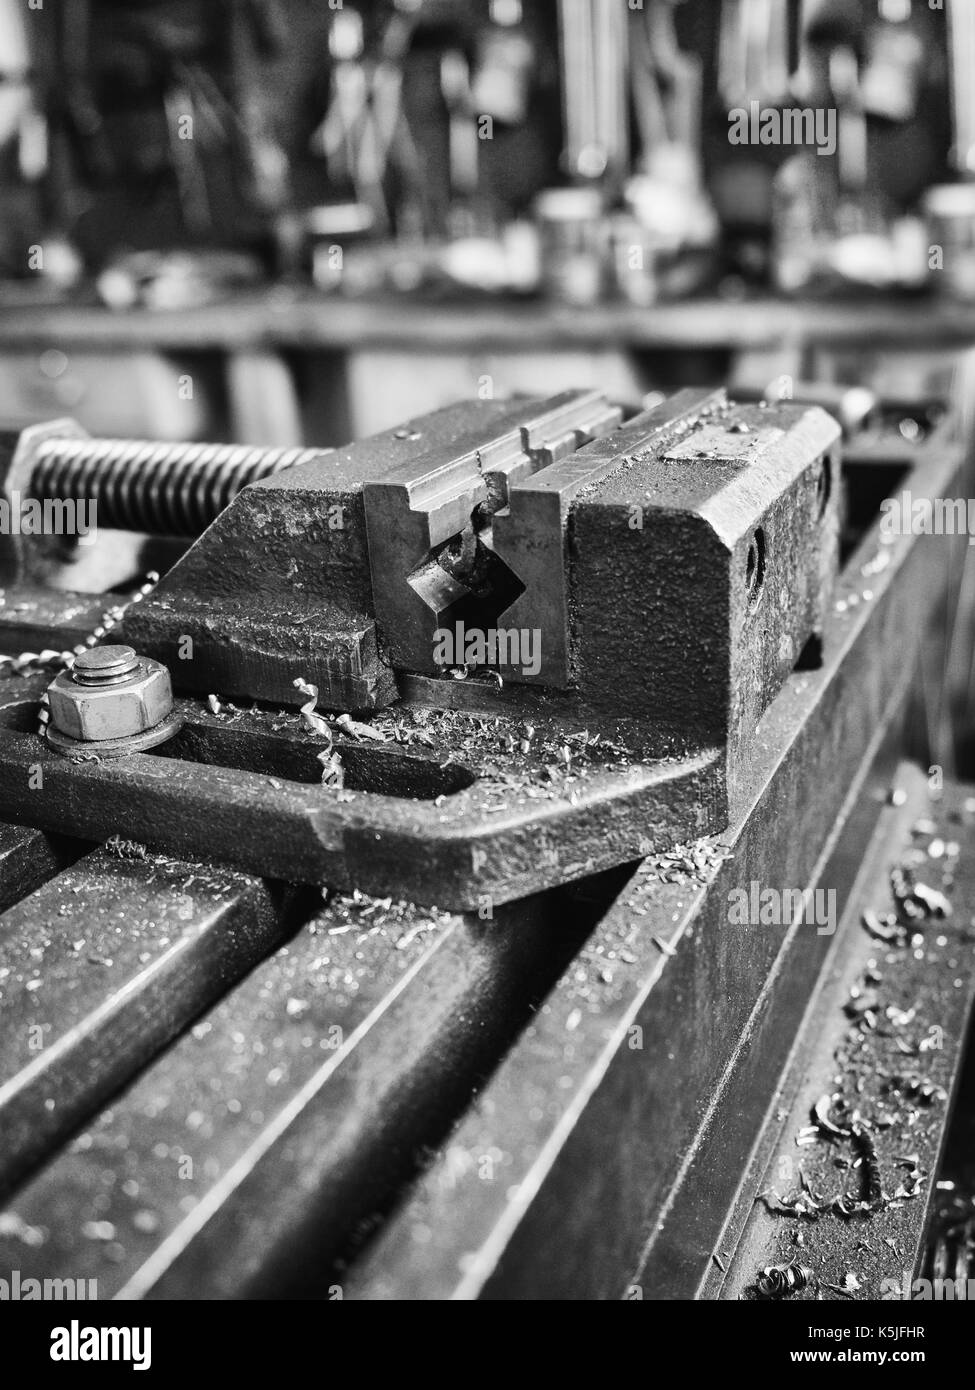 Detail der Bohrmaschine Schraubstock in einer mechanischen Werkstatt  Stockfotografie - Alamy